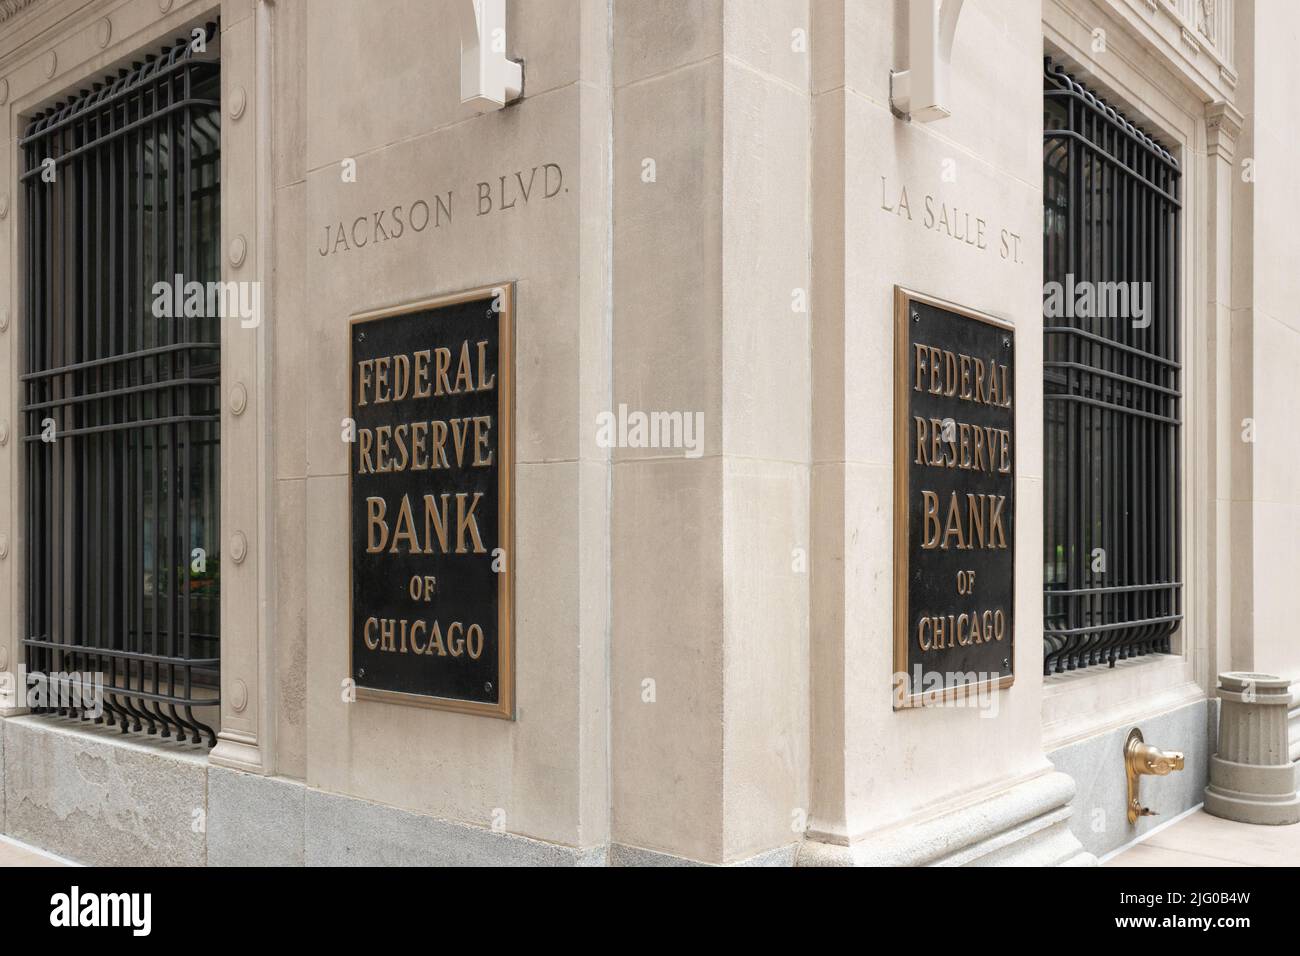 La Federal Reserve Bank of Chicago, située dans le quartier financier de Chicago, est l'une des 12 banques régionales des États-Unis. Banque D'Images